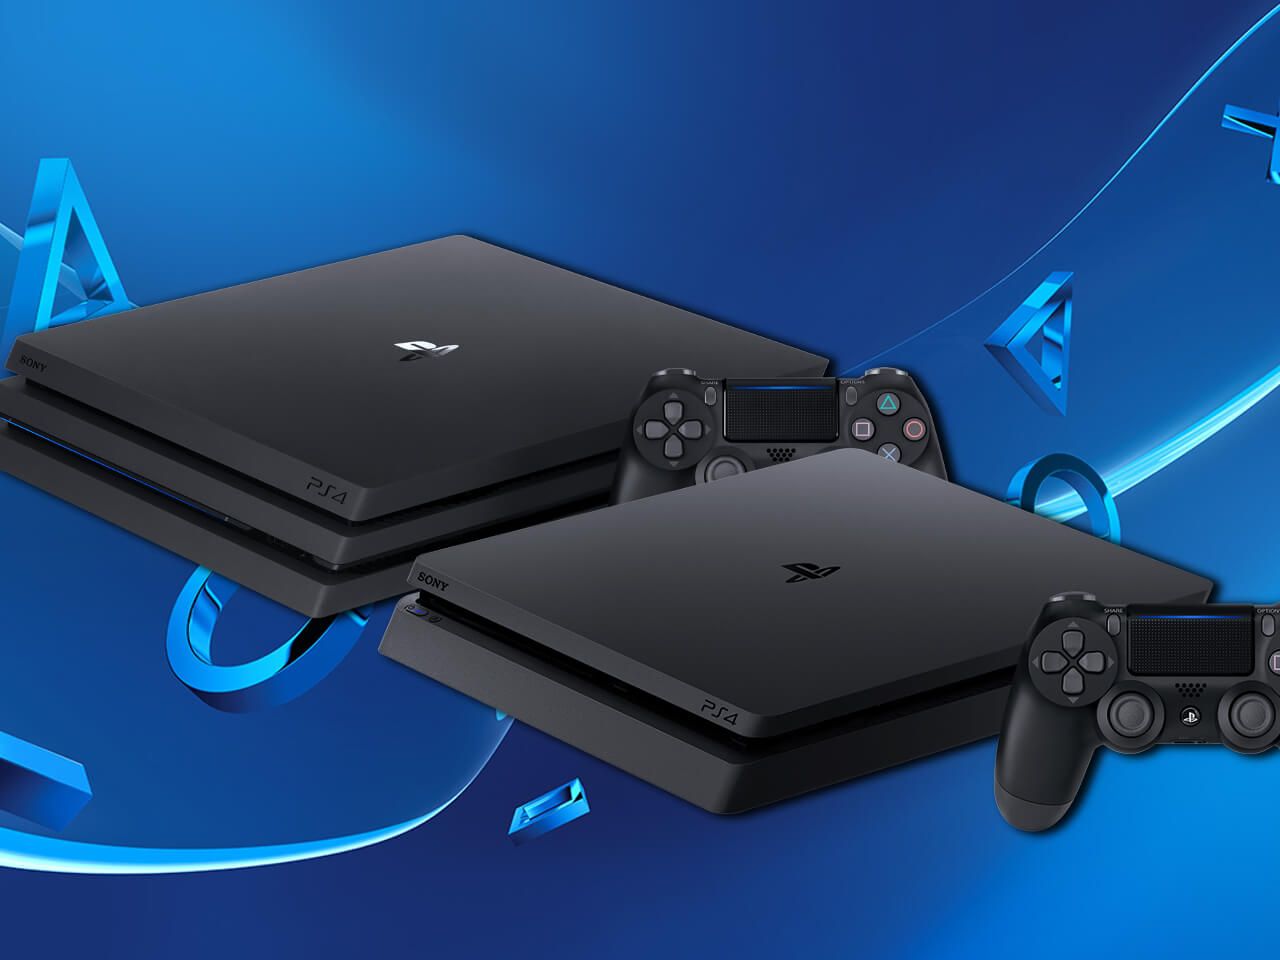 PS4 Slim PS4 Pro. Którą konsolę kupić? - Ekspert Ceneo